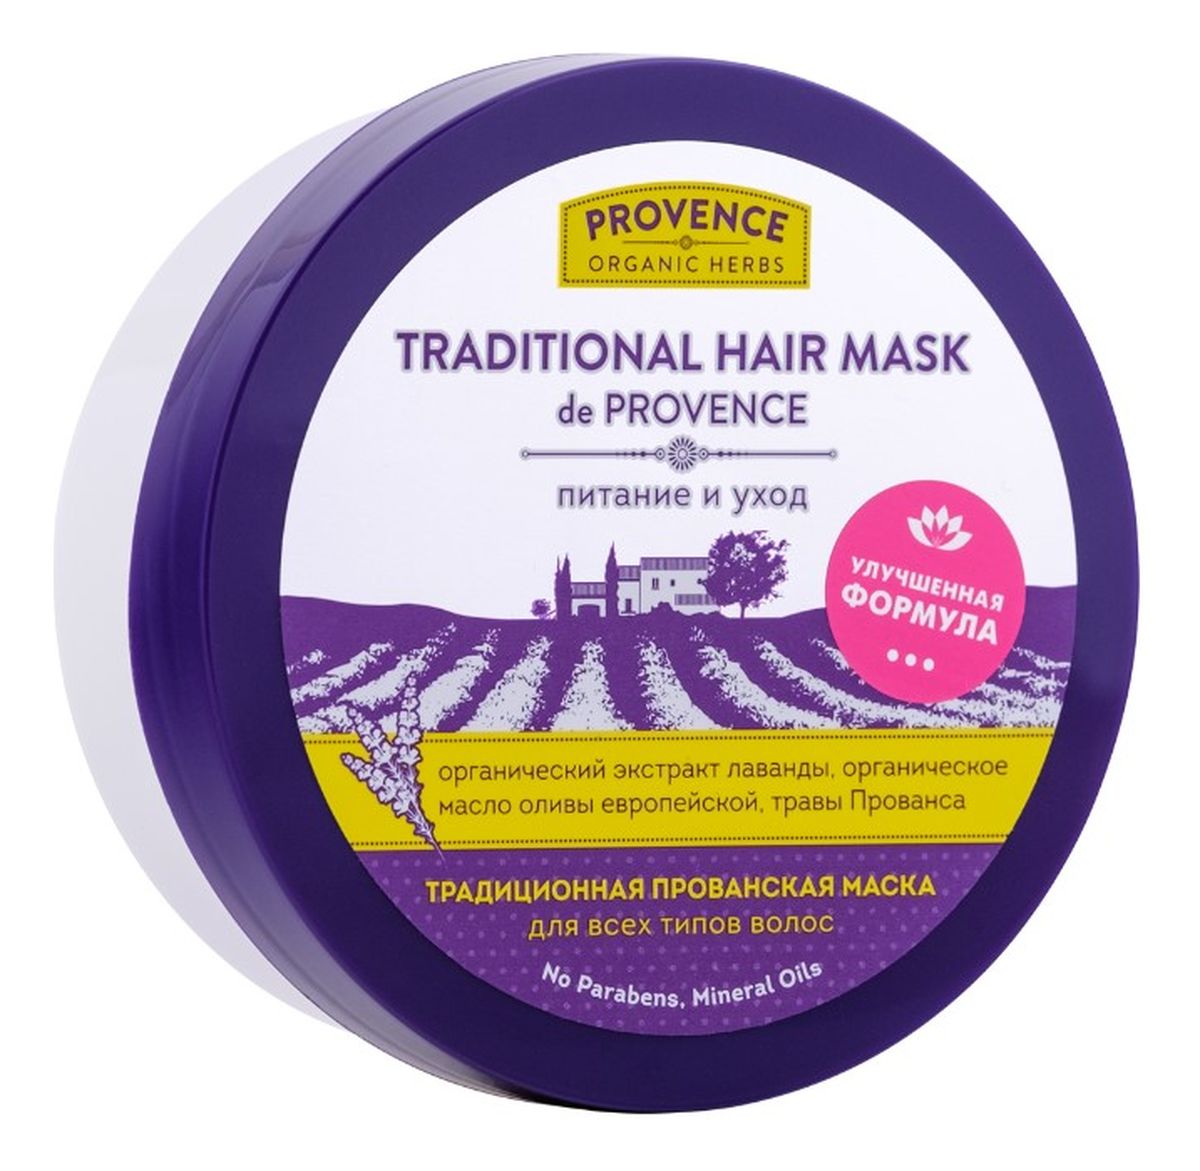 Tradycyjna organiczna maska Prowansalska do włosów - odżywienie i pielęgnacja